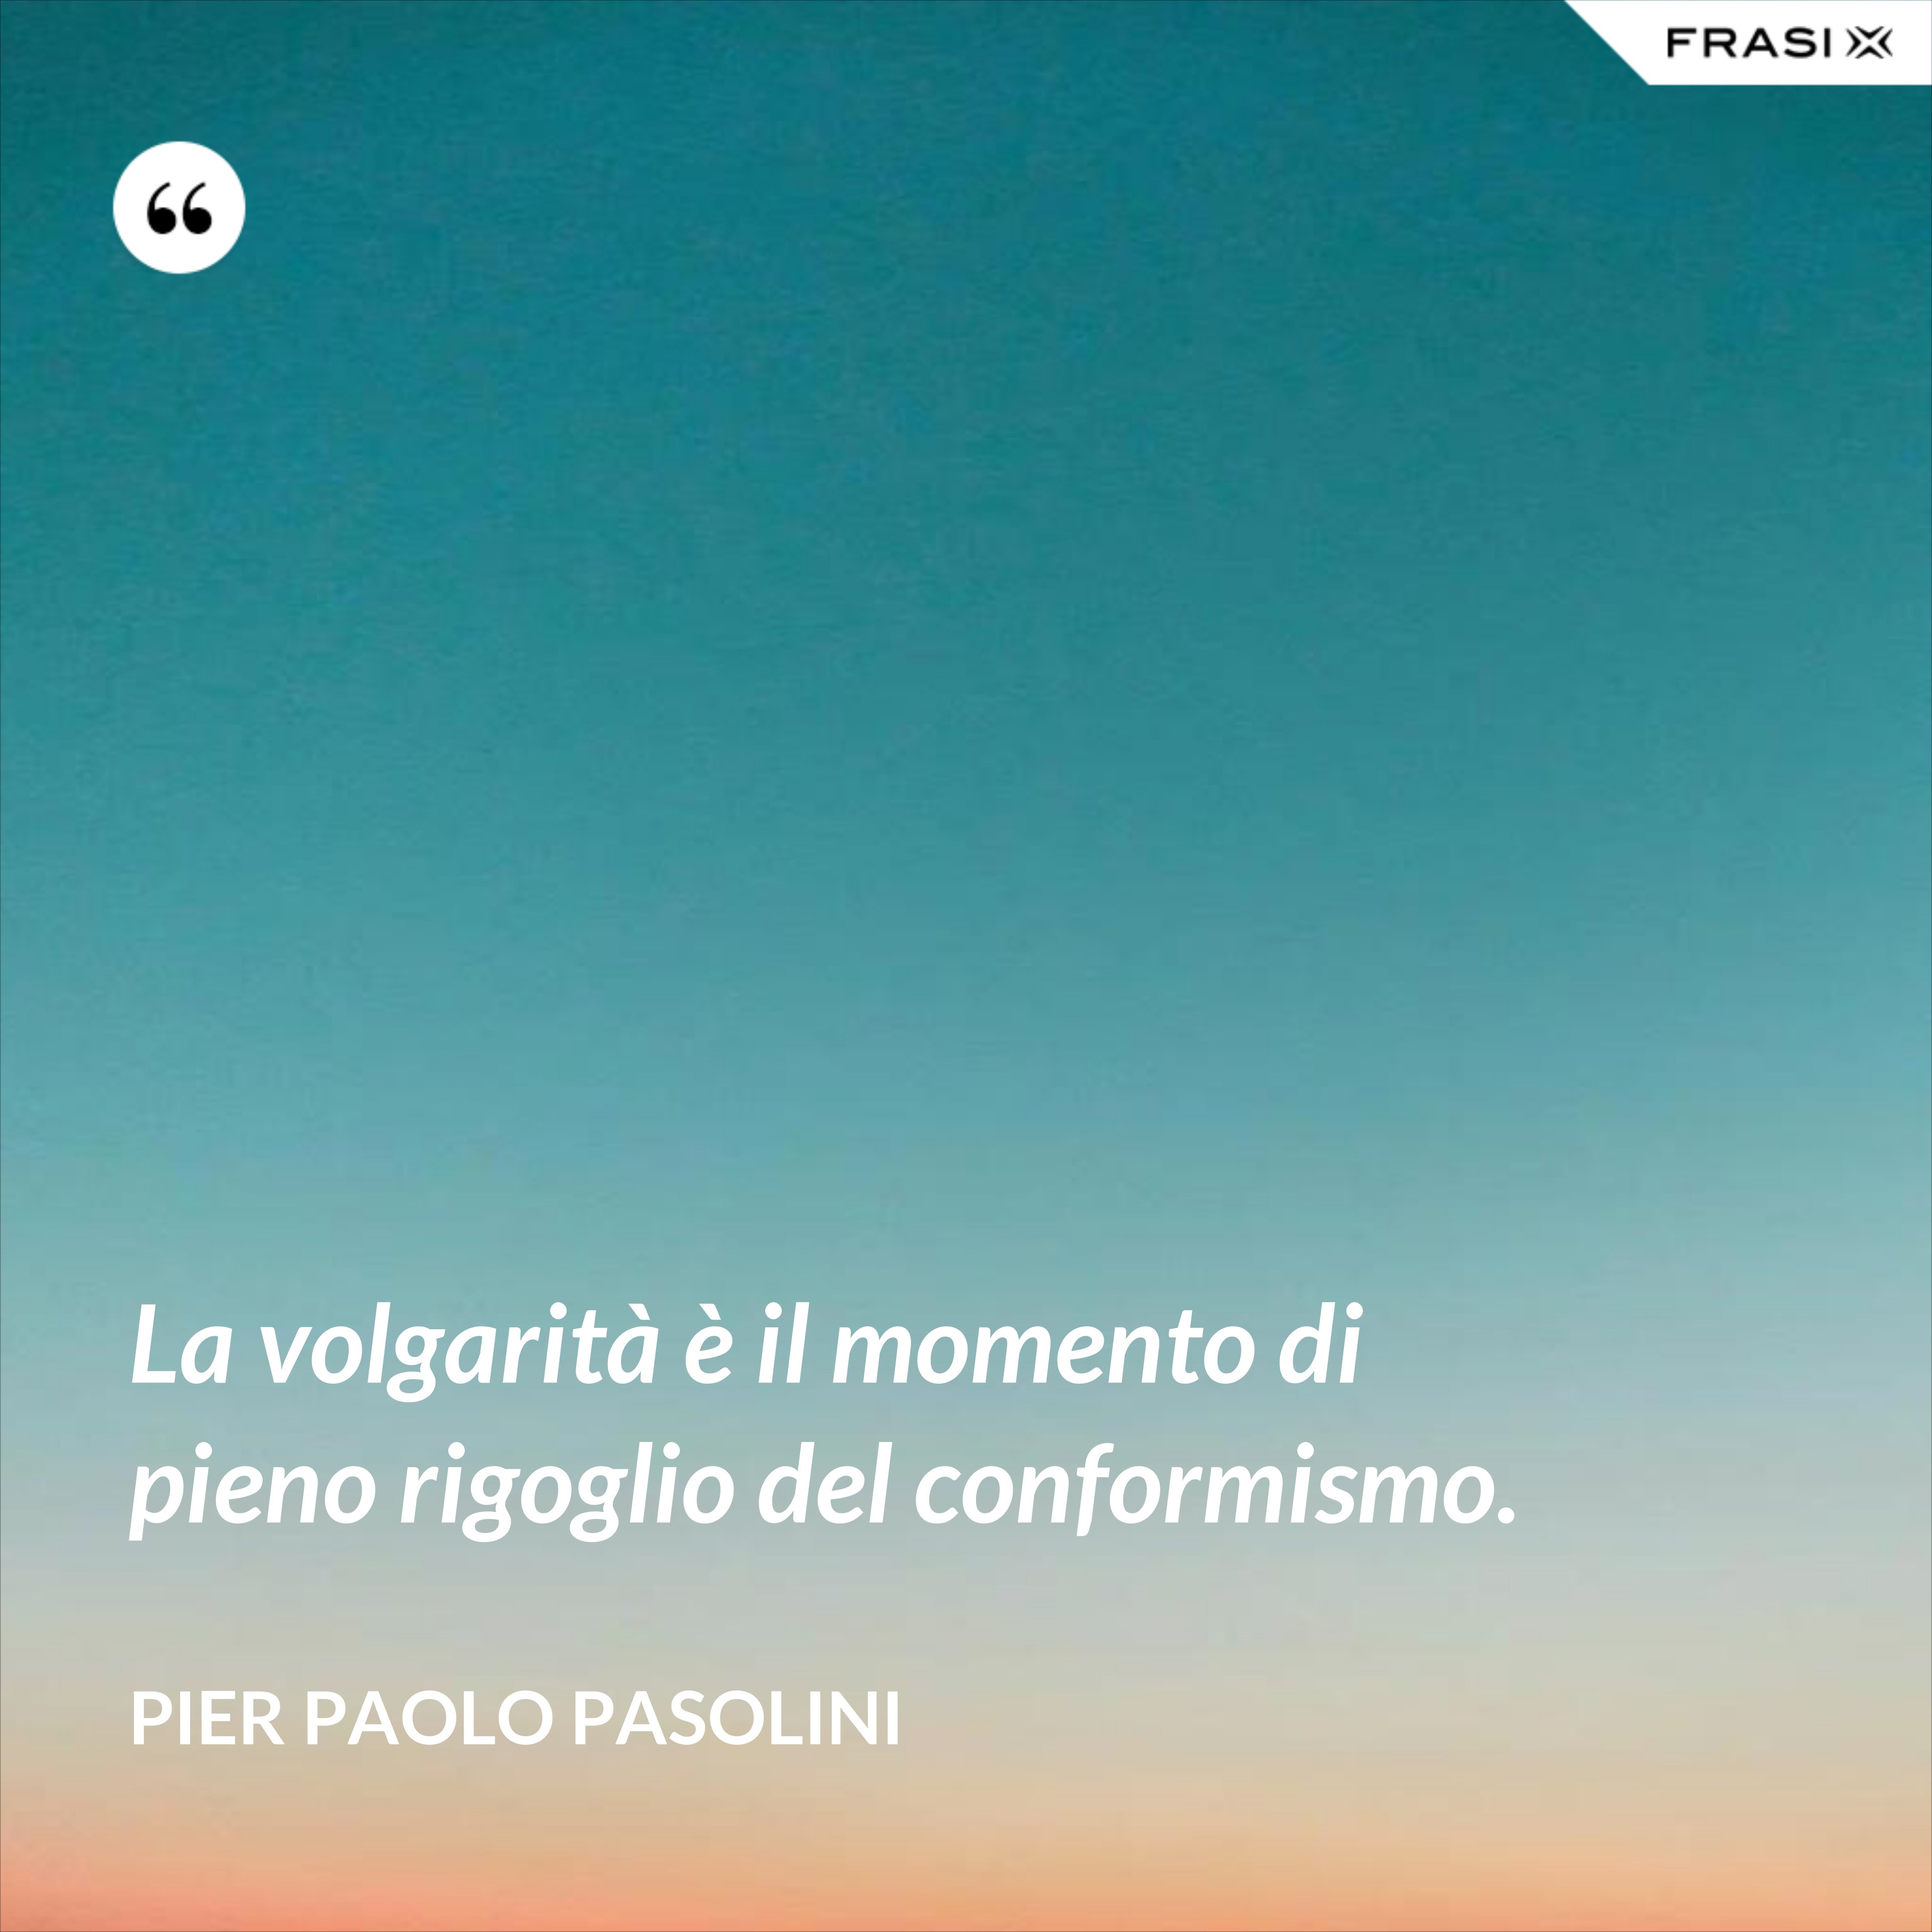 La volgarità è il momento di pieno rigoglio del conformismo. - Pier Paolo Pasolini